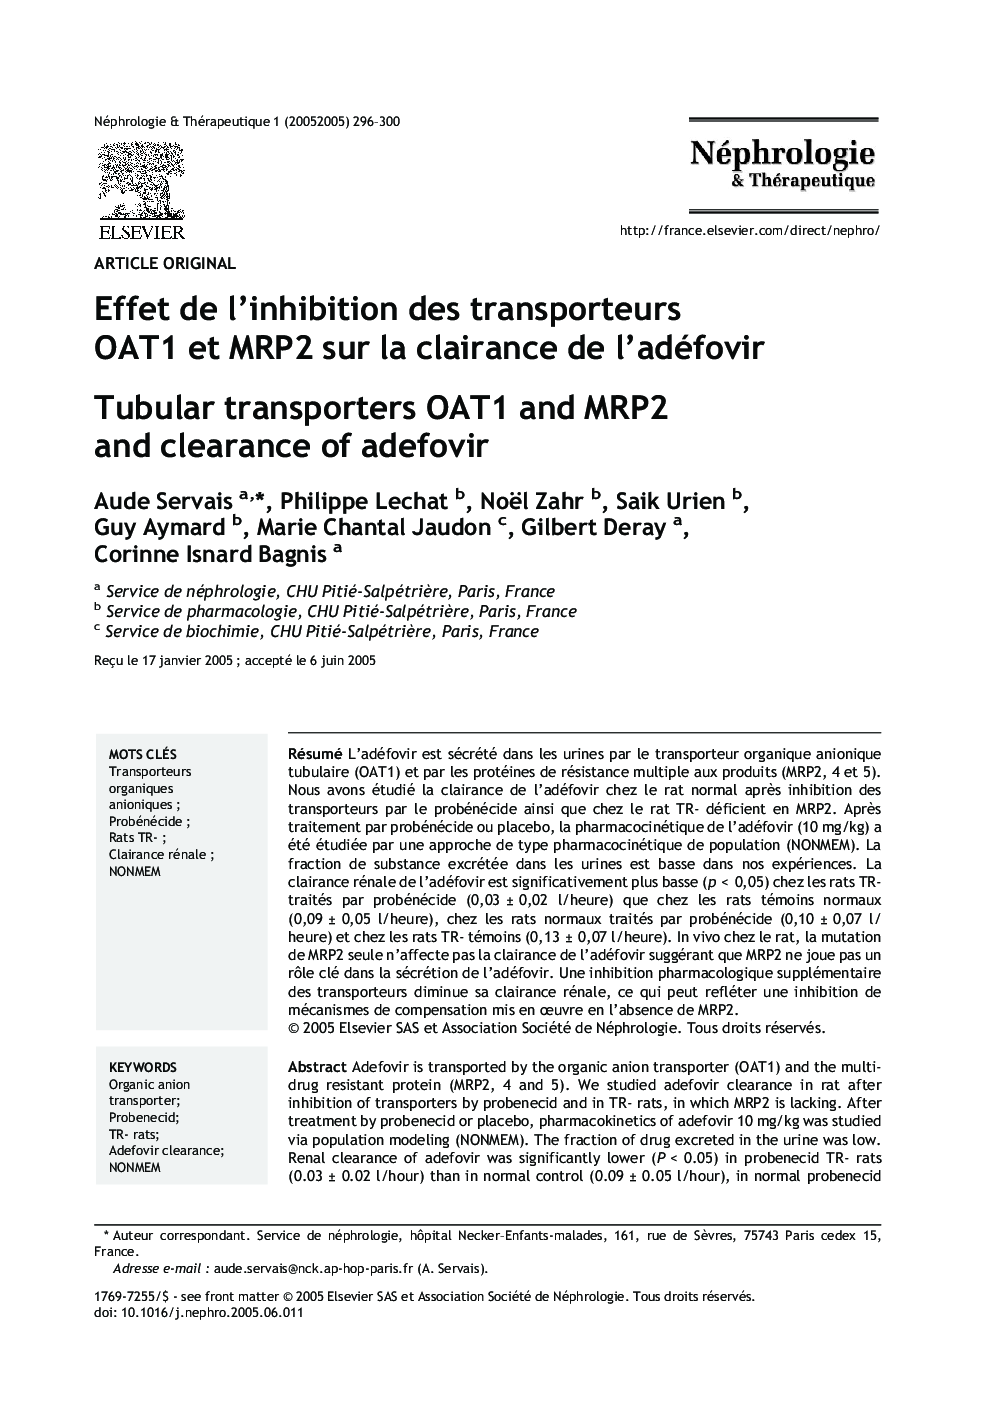 Effet de l'inhibition des transporteurs OAT1 et MRP2 sur la clairance de l'adéfovir